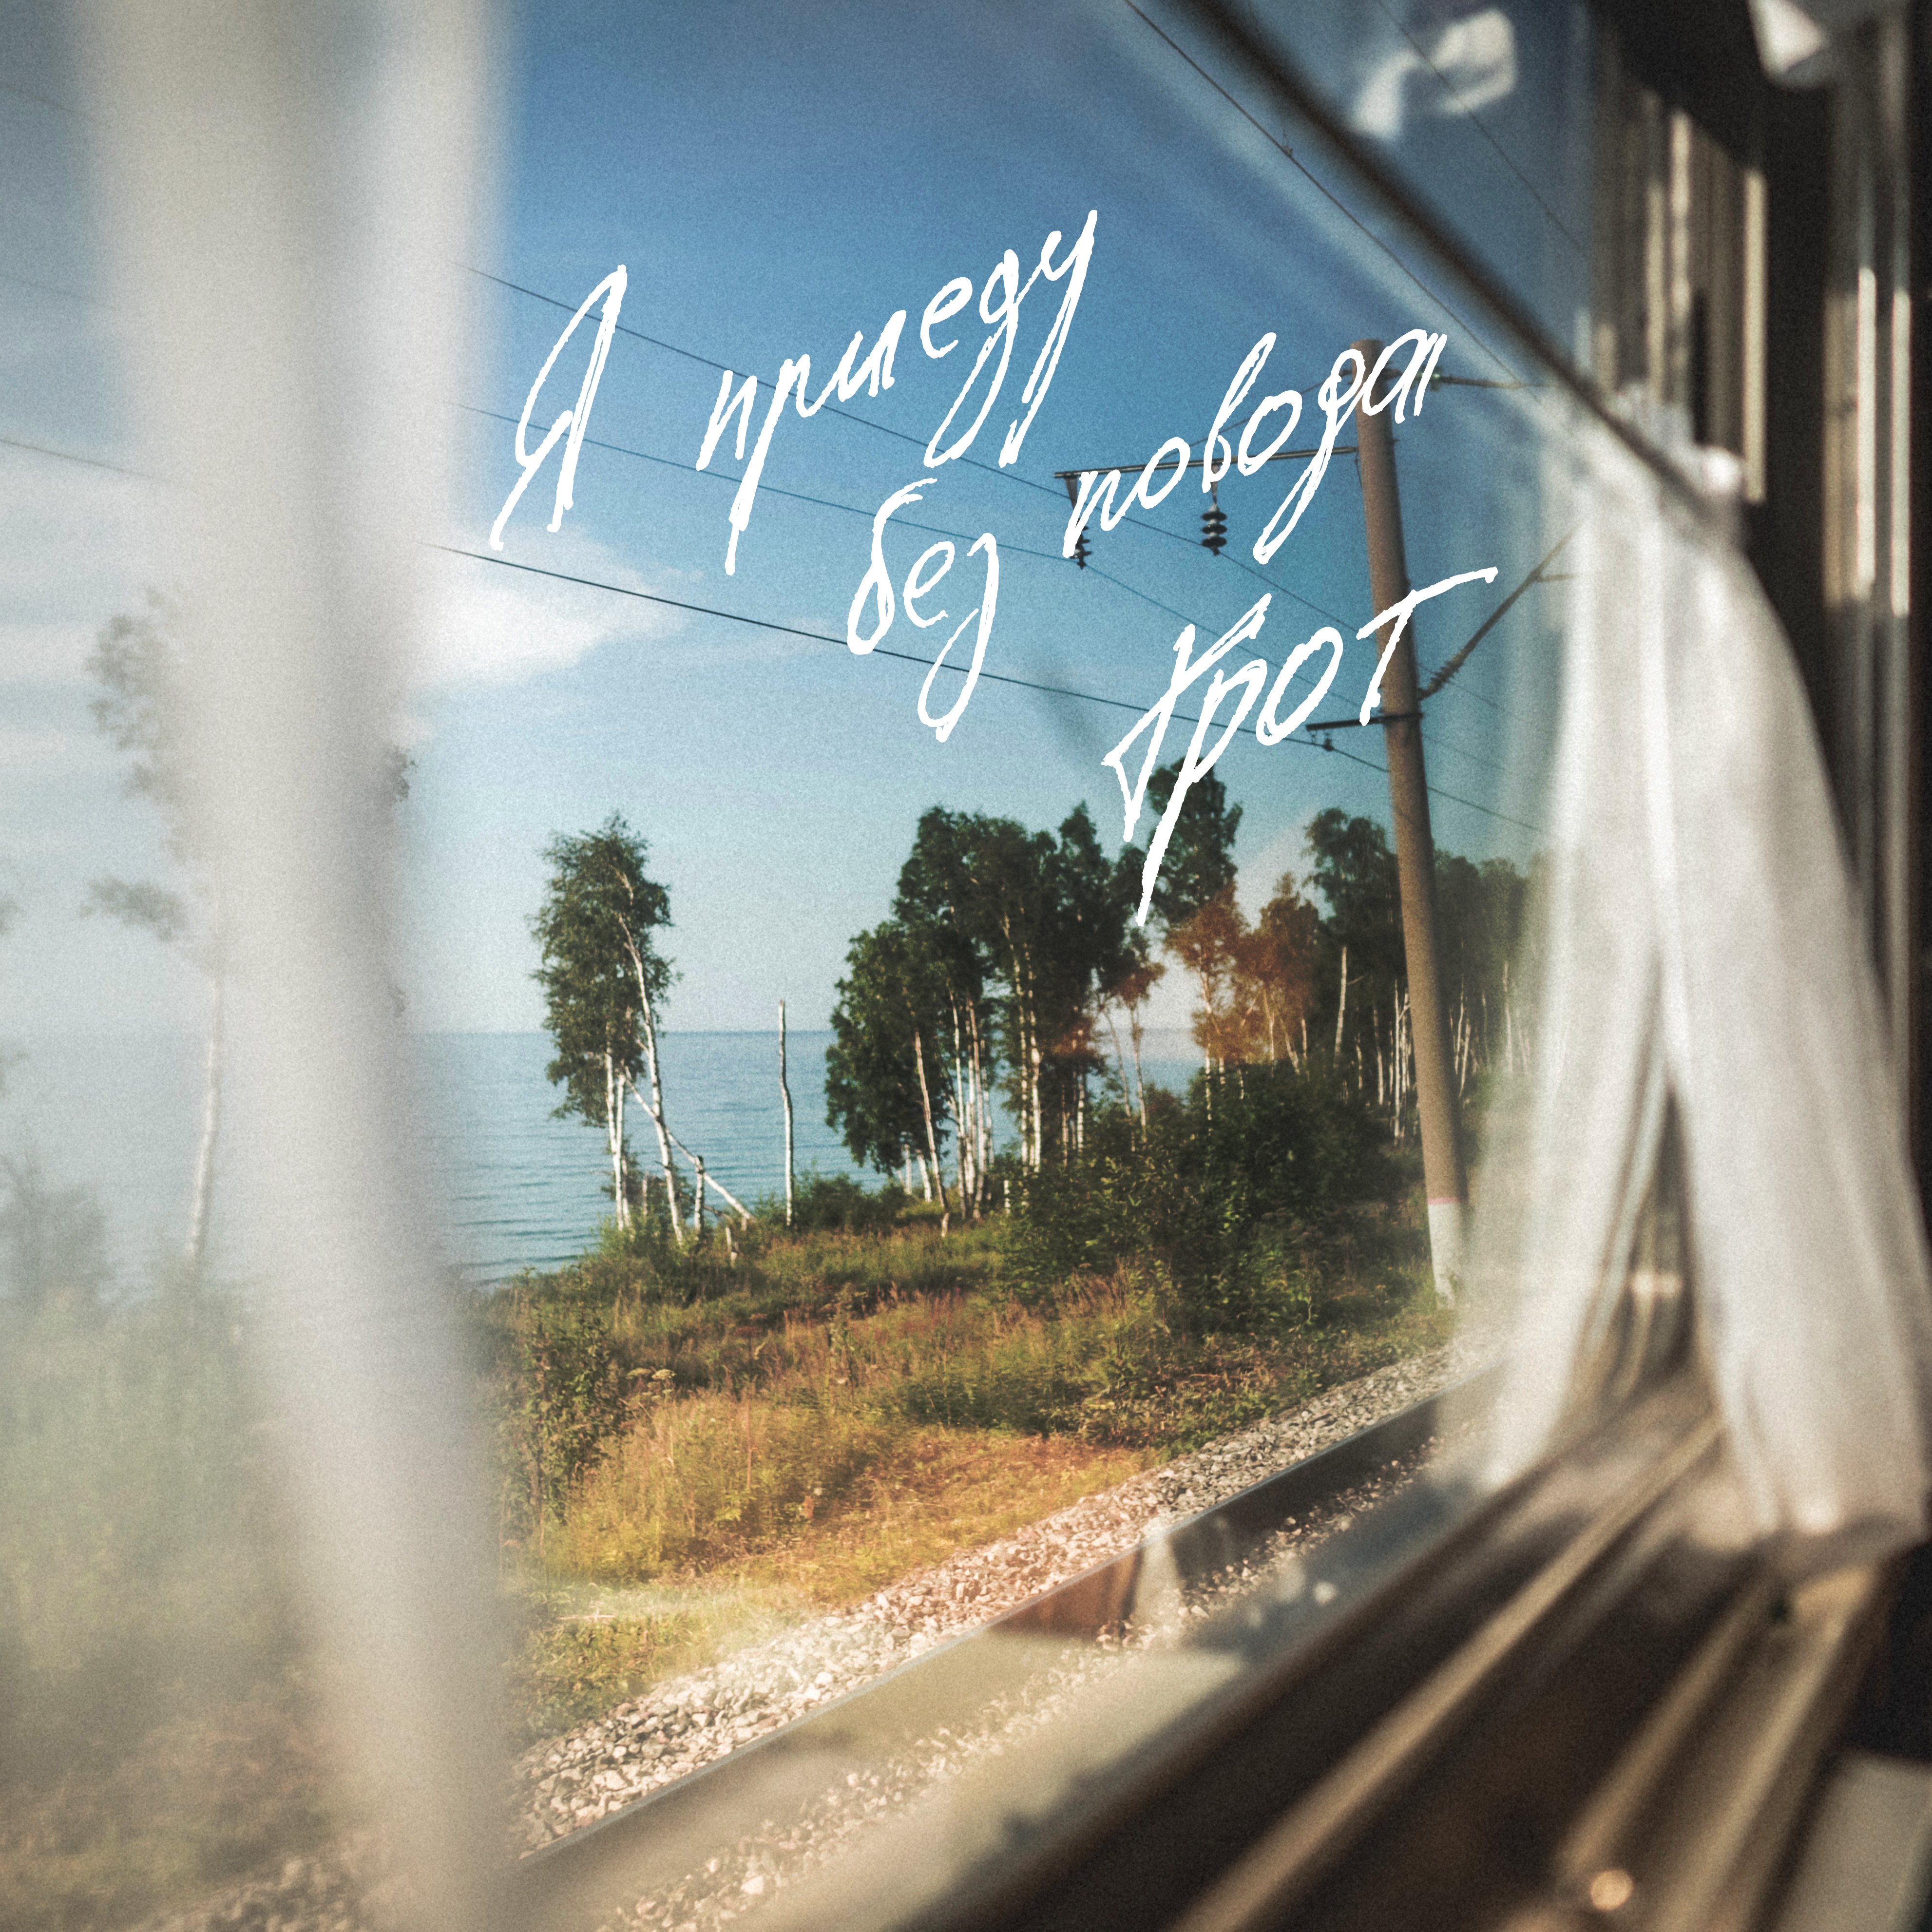 Мы все живем однажды на земле песня. Я приеду без повода грот. Вид из окна поезда. Окно поезда. Пейзаж из окна поезда.